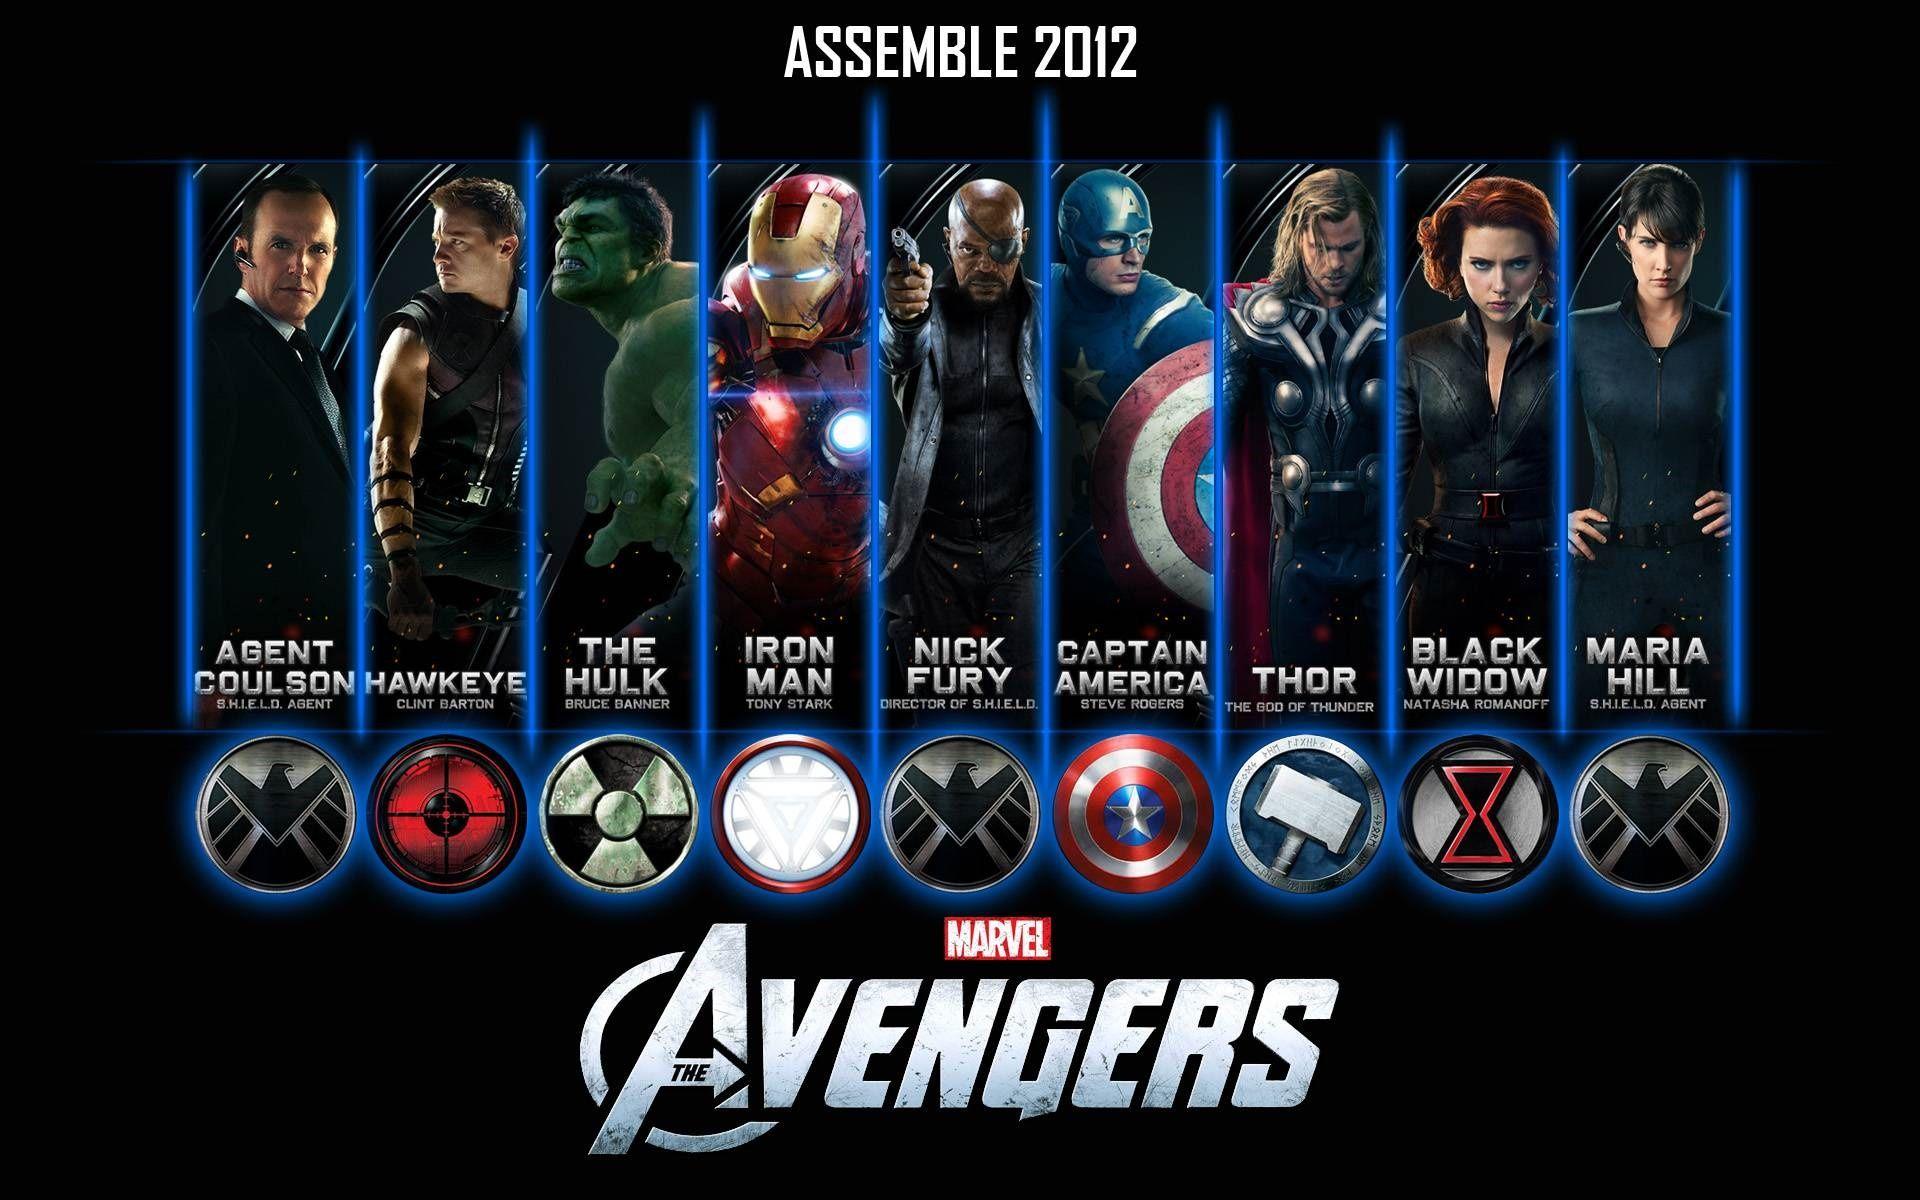 Marvel Avengers pictures.jpg